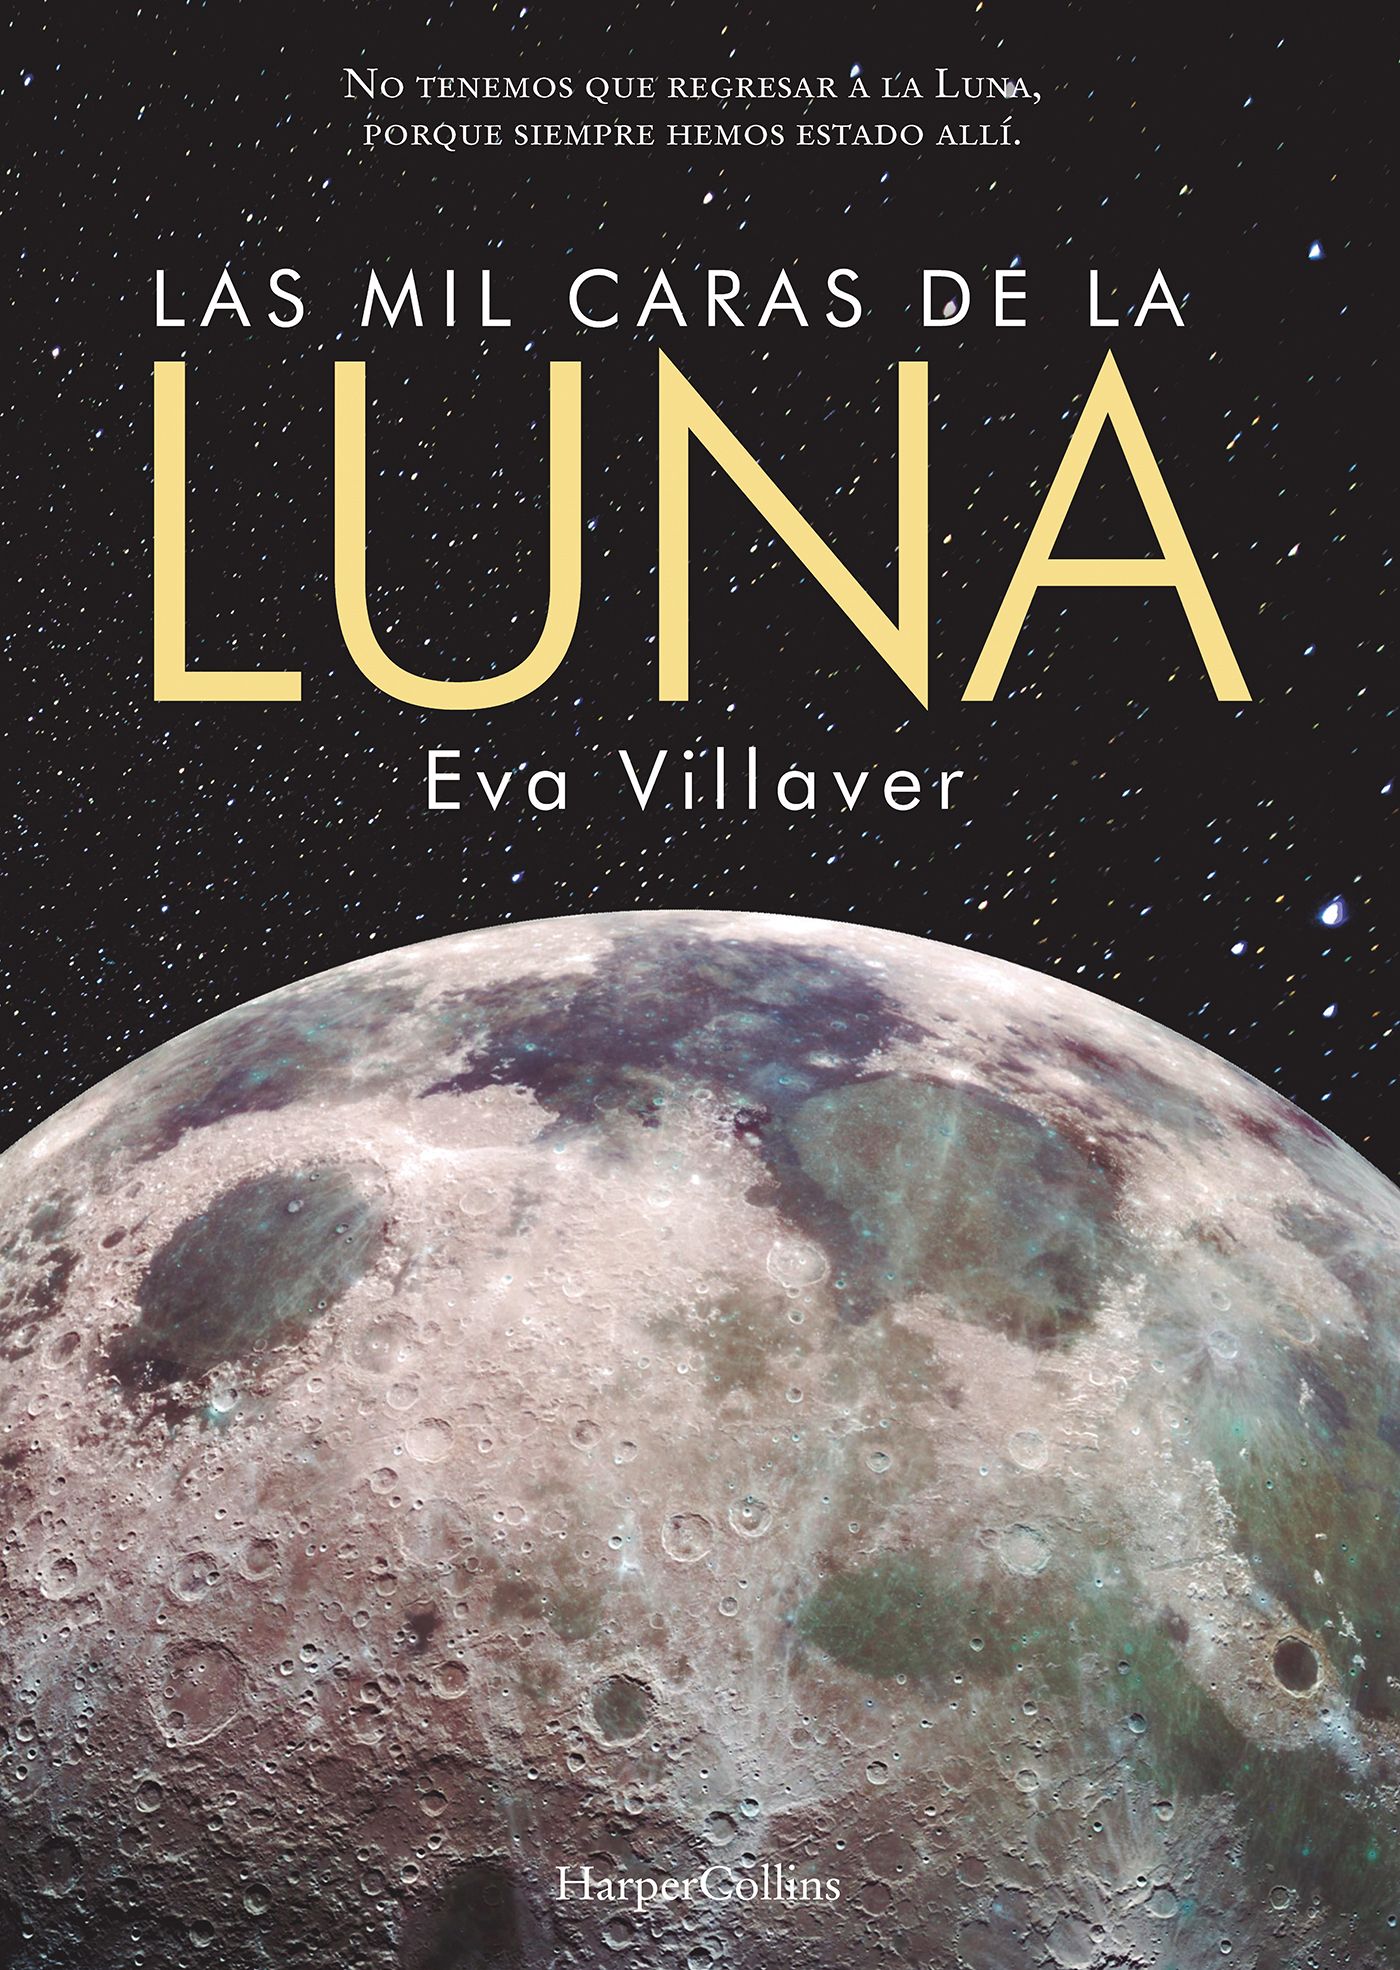 La astrofísica Eva Villaver nos acerca a Las mil caras de la luna